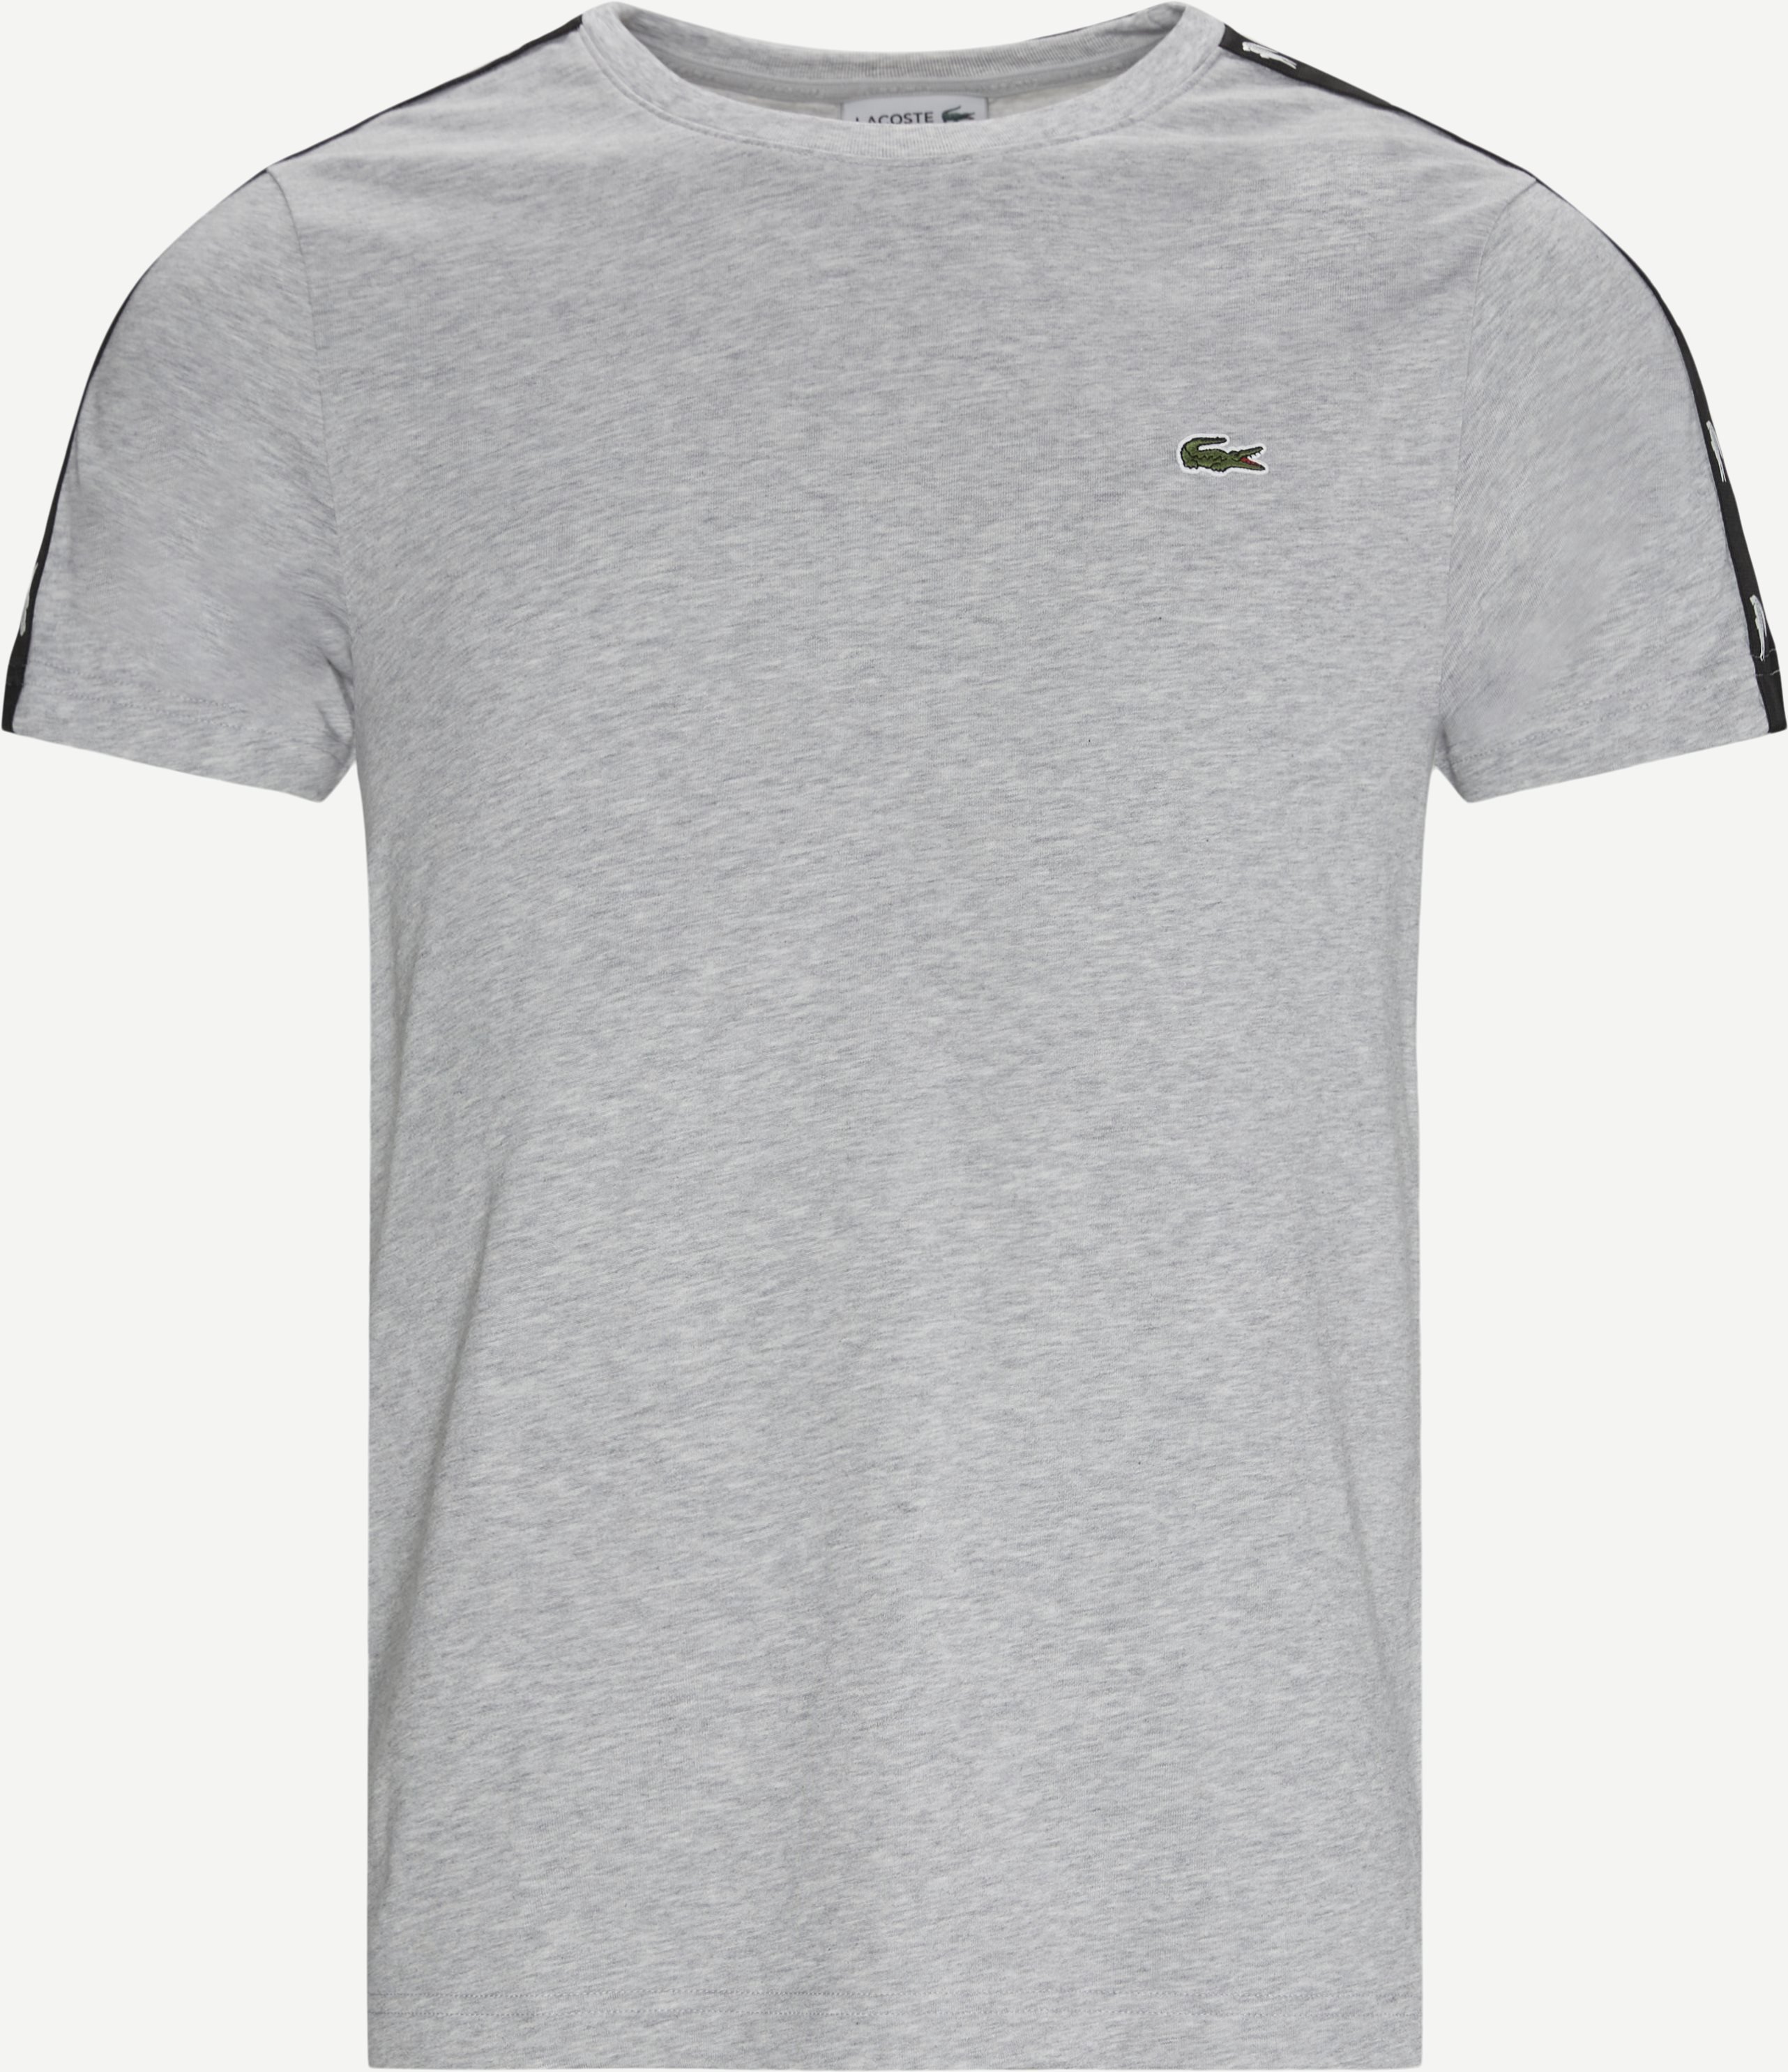 Logo Tee - T-shirts - Regular fit - Grå